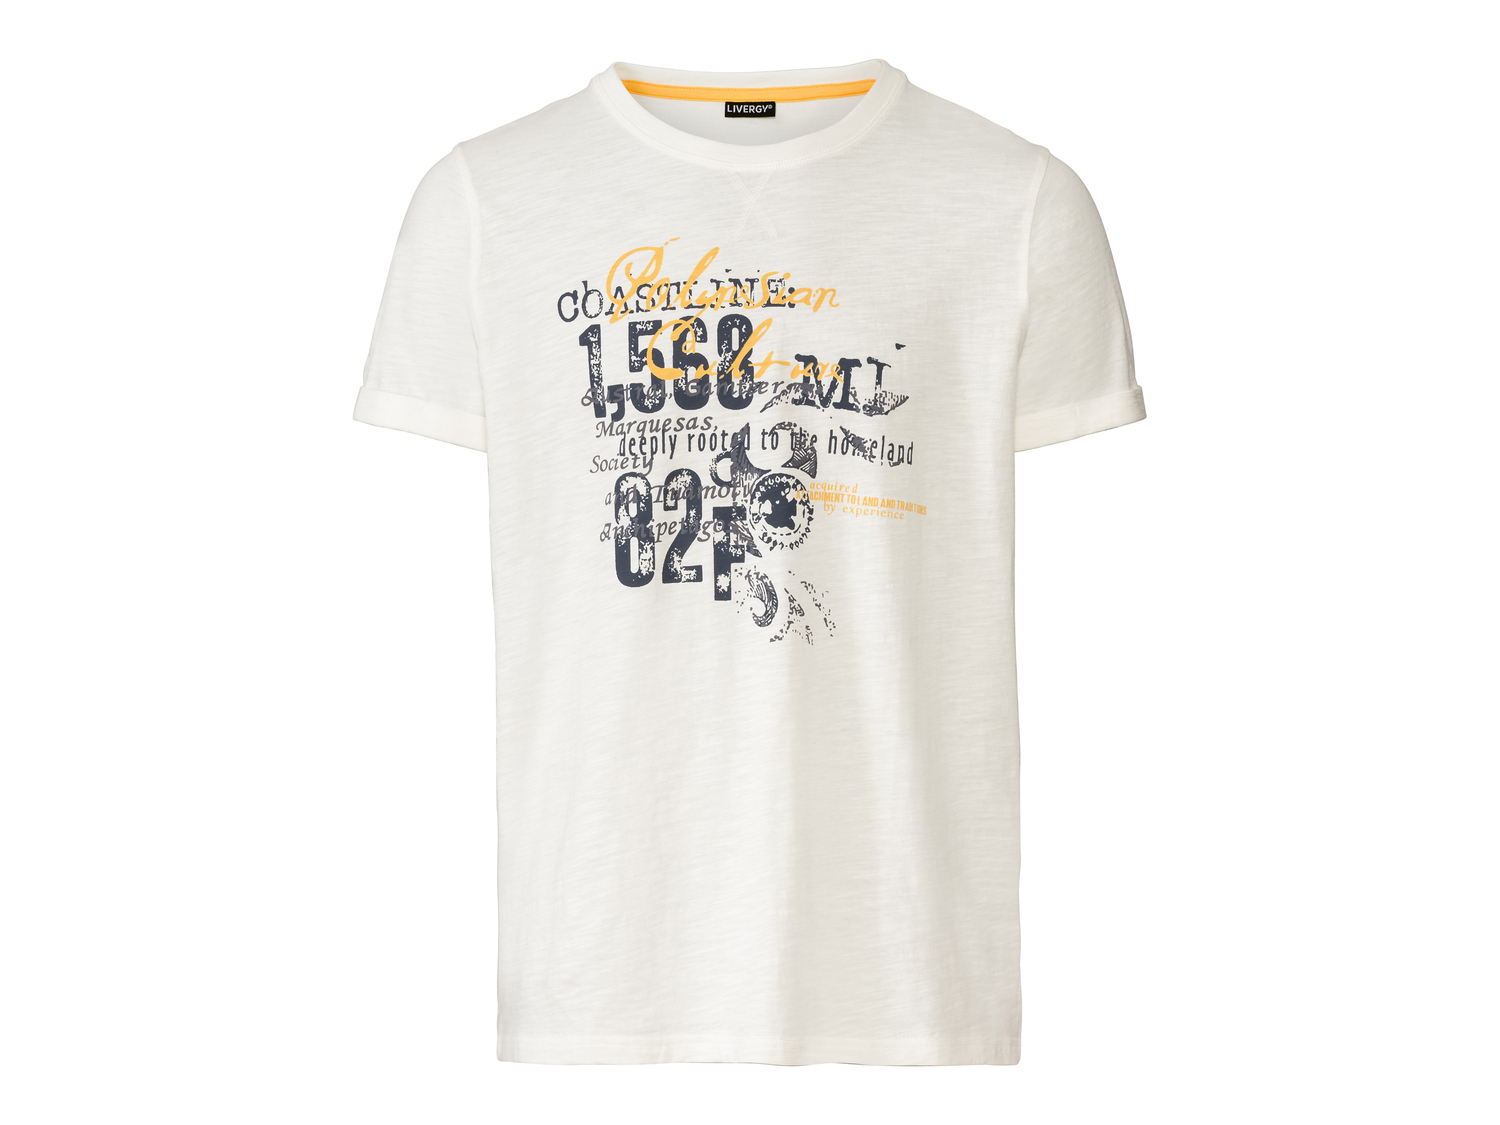 T-shirt da uomo Livergy, prezzo 4.99 &#8364; 
Misure: S-XL 
- 
Puro cotone
Prodotto ...